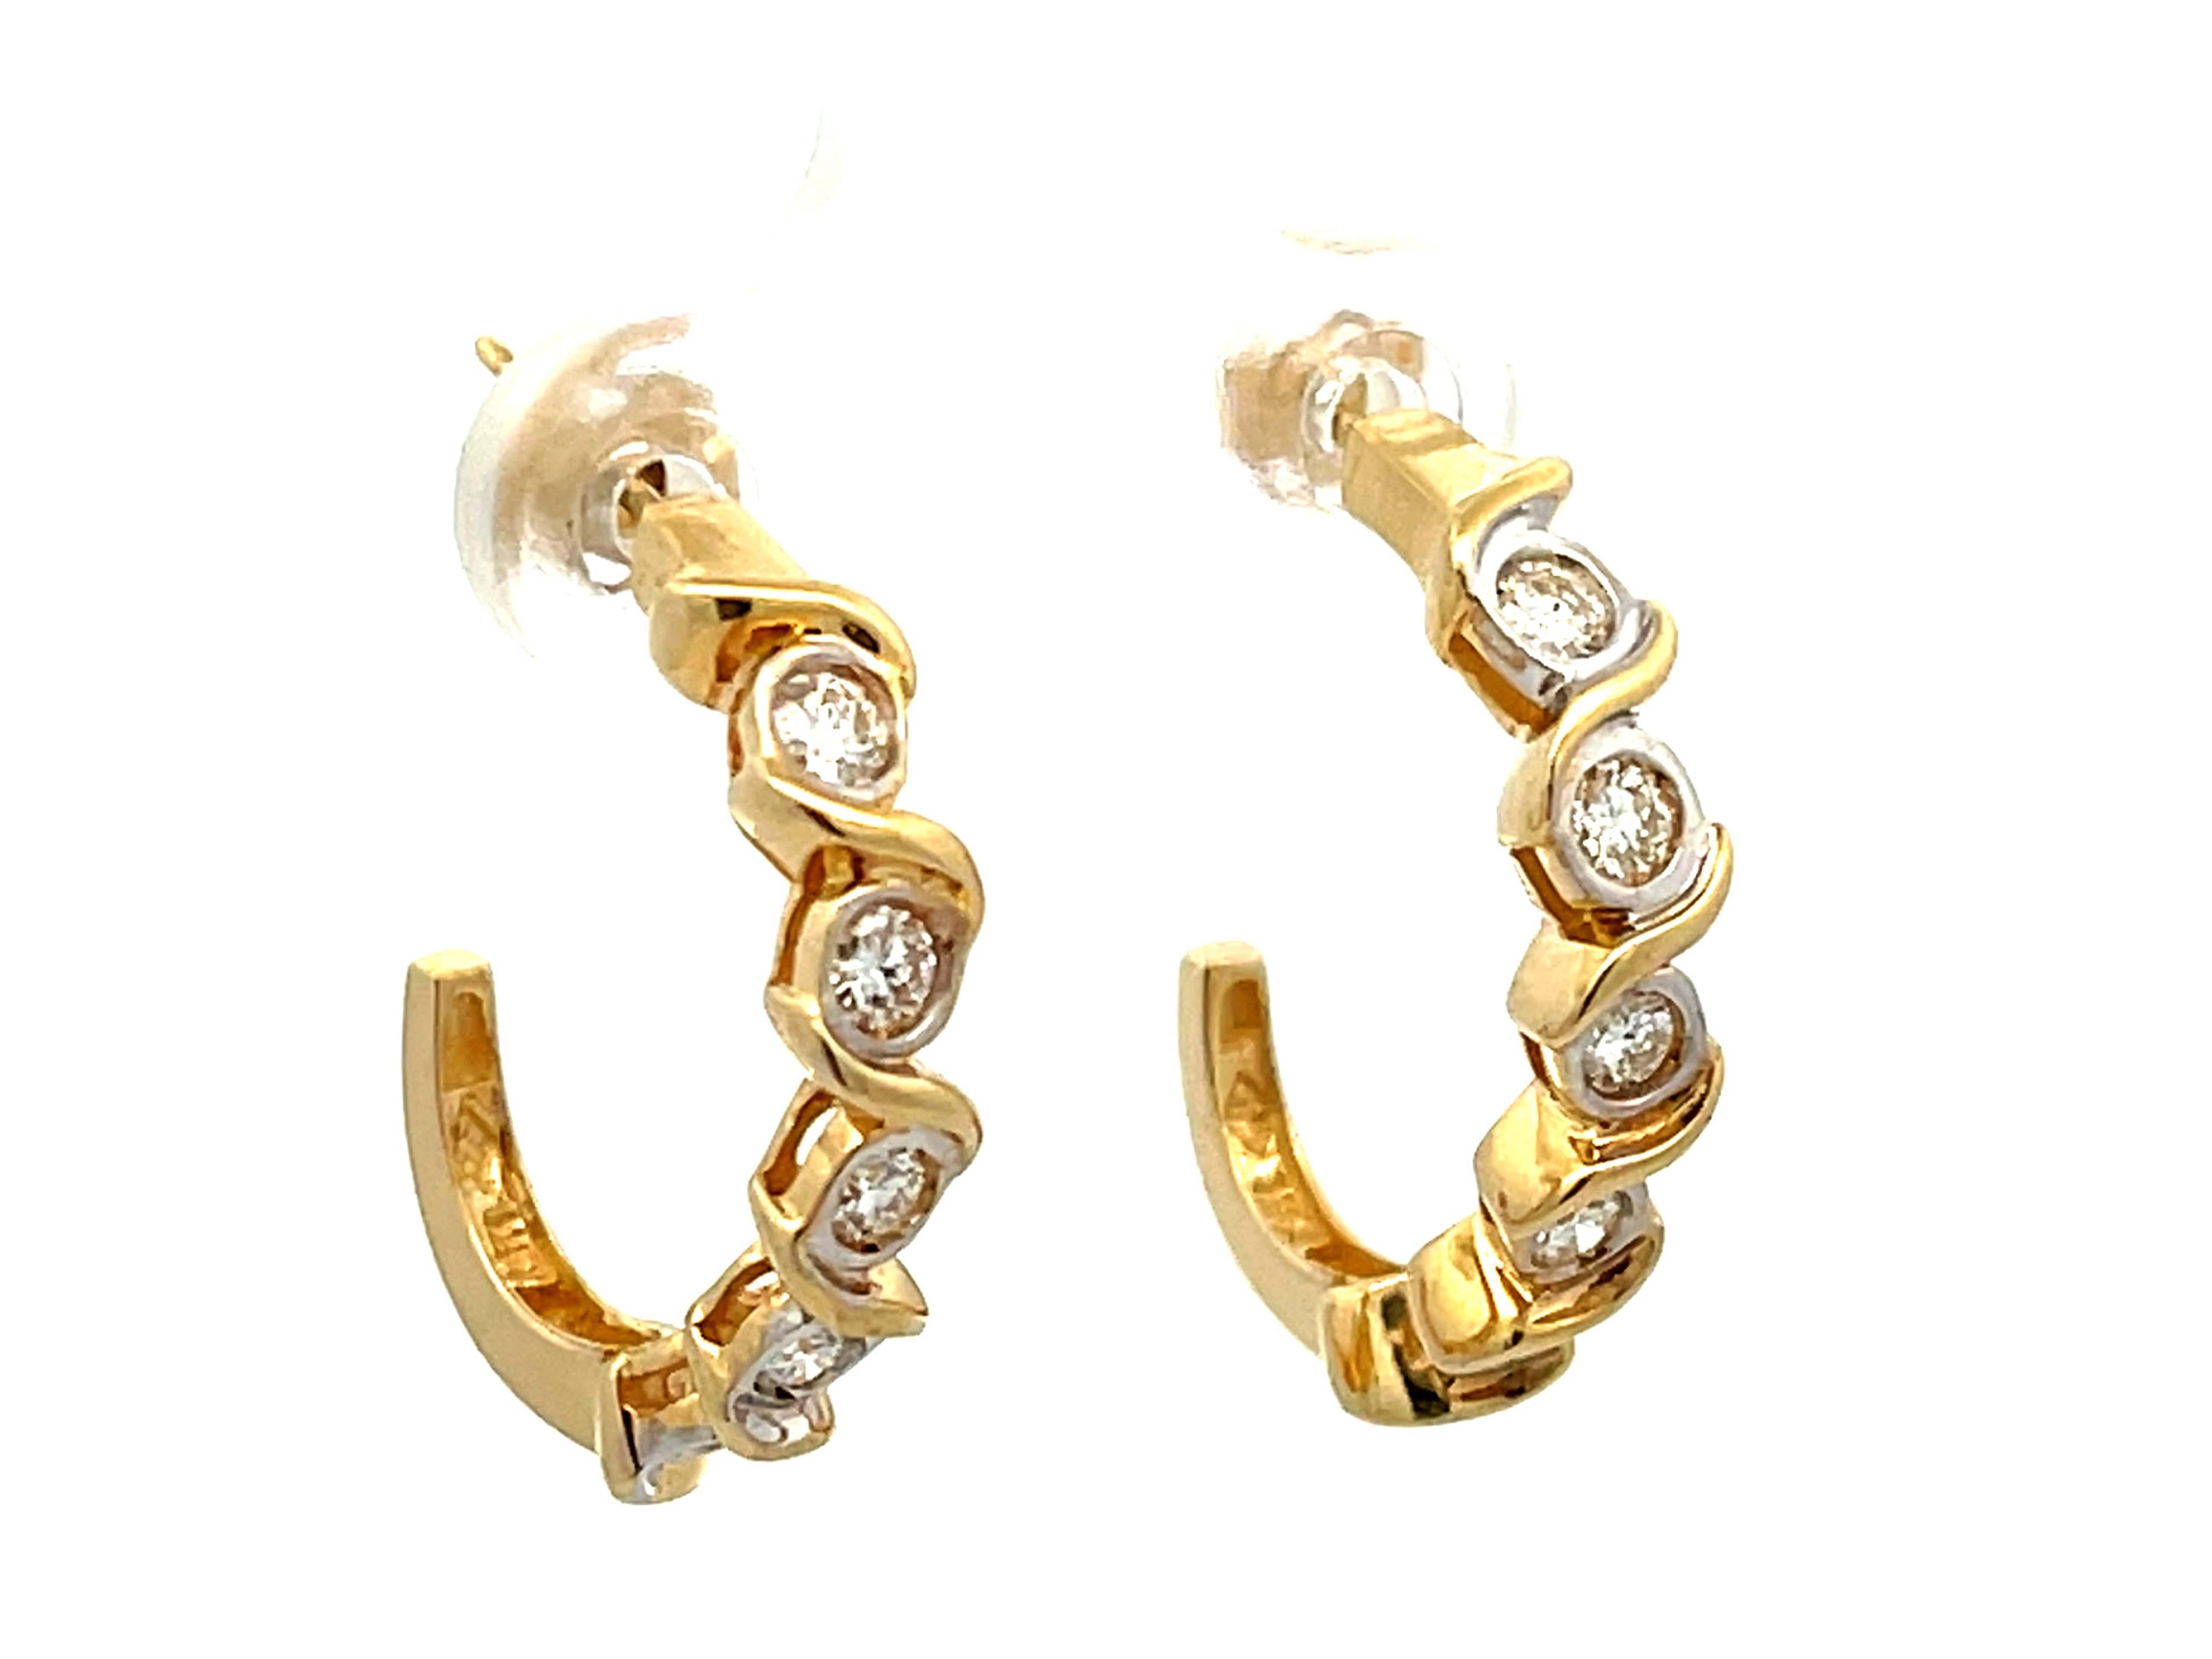 Brilliant Cut Diamond Wrap Earrings in 14k Yellow Gold For Sale